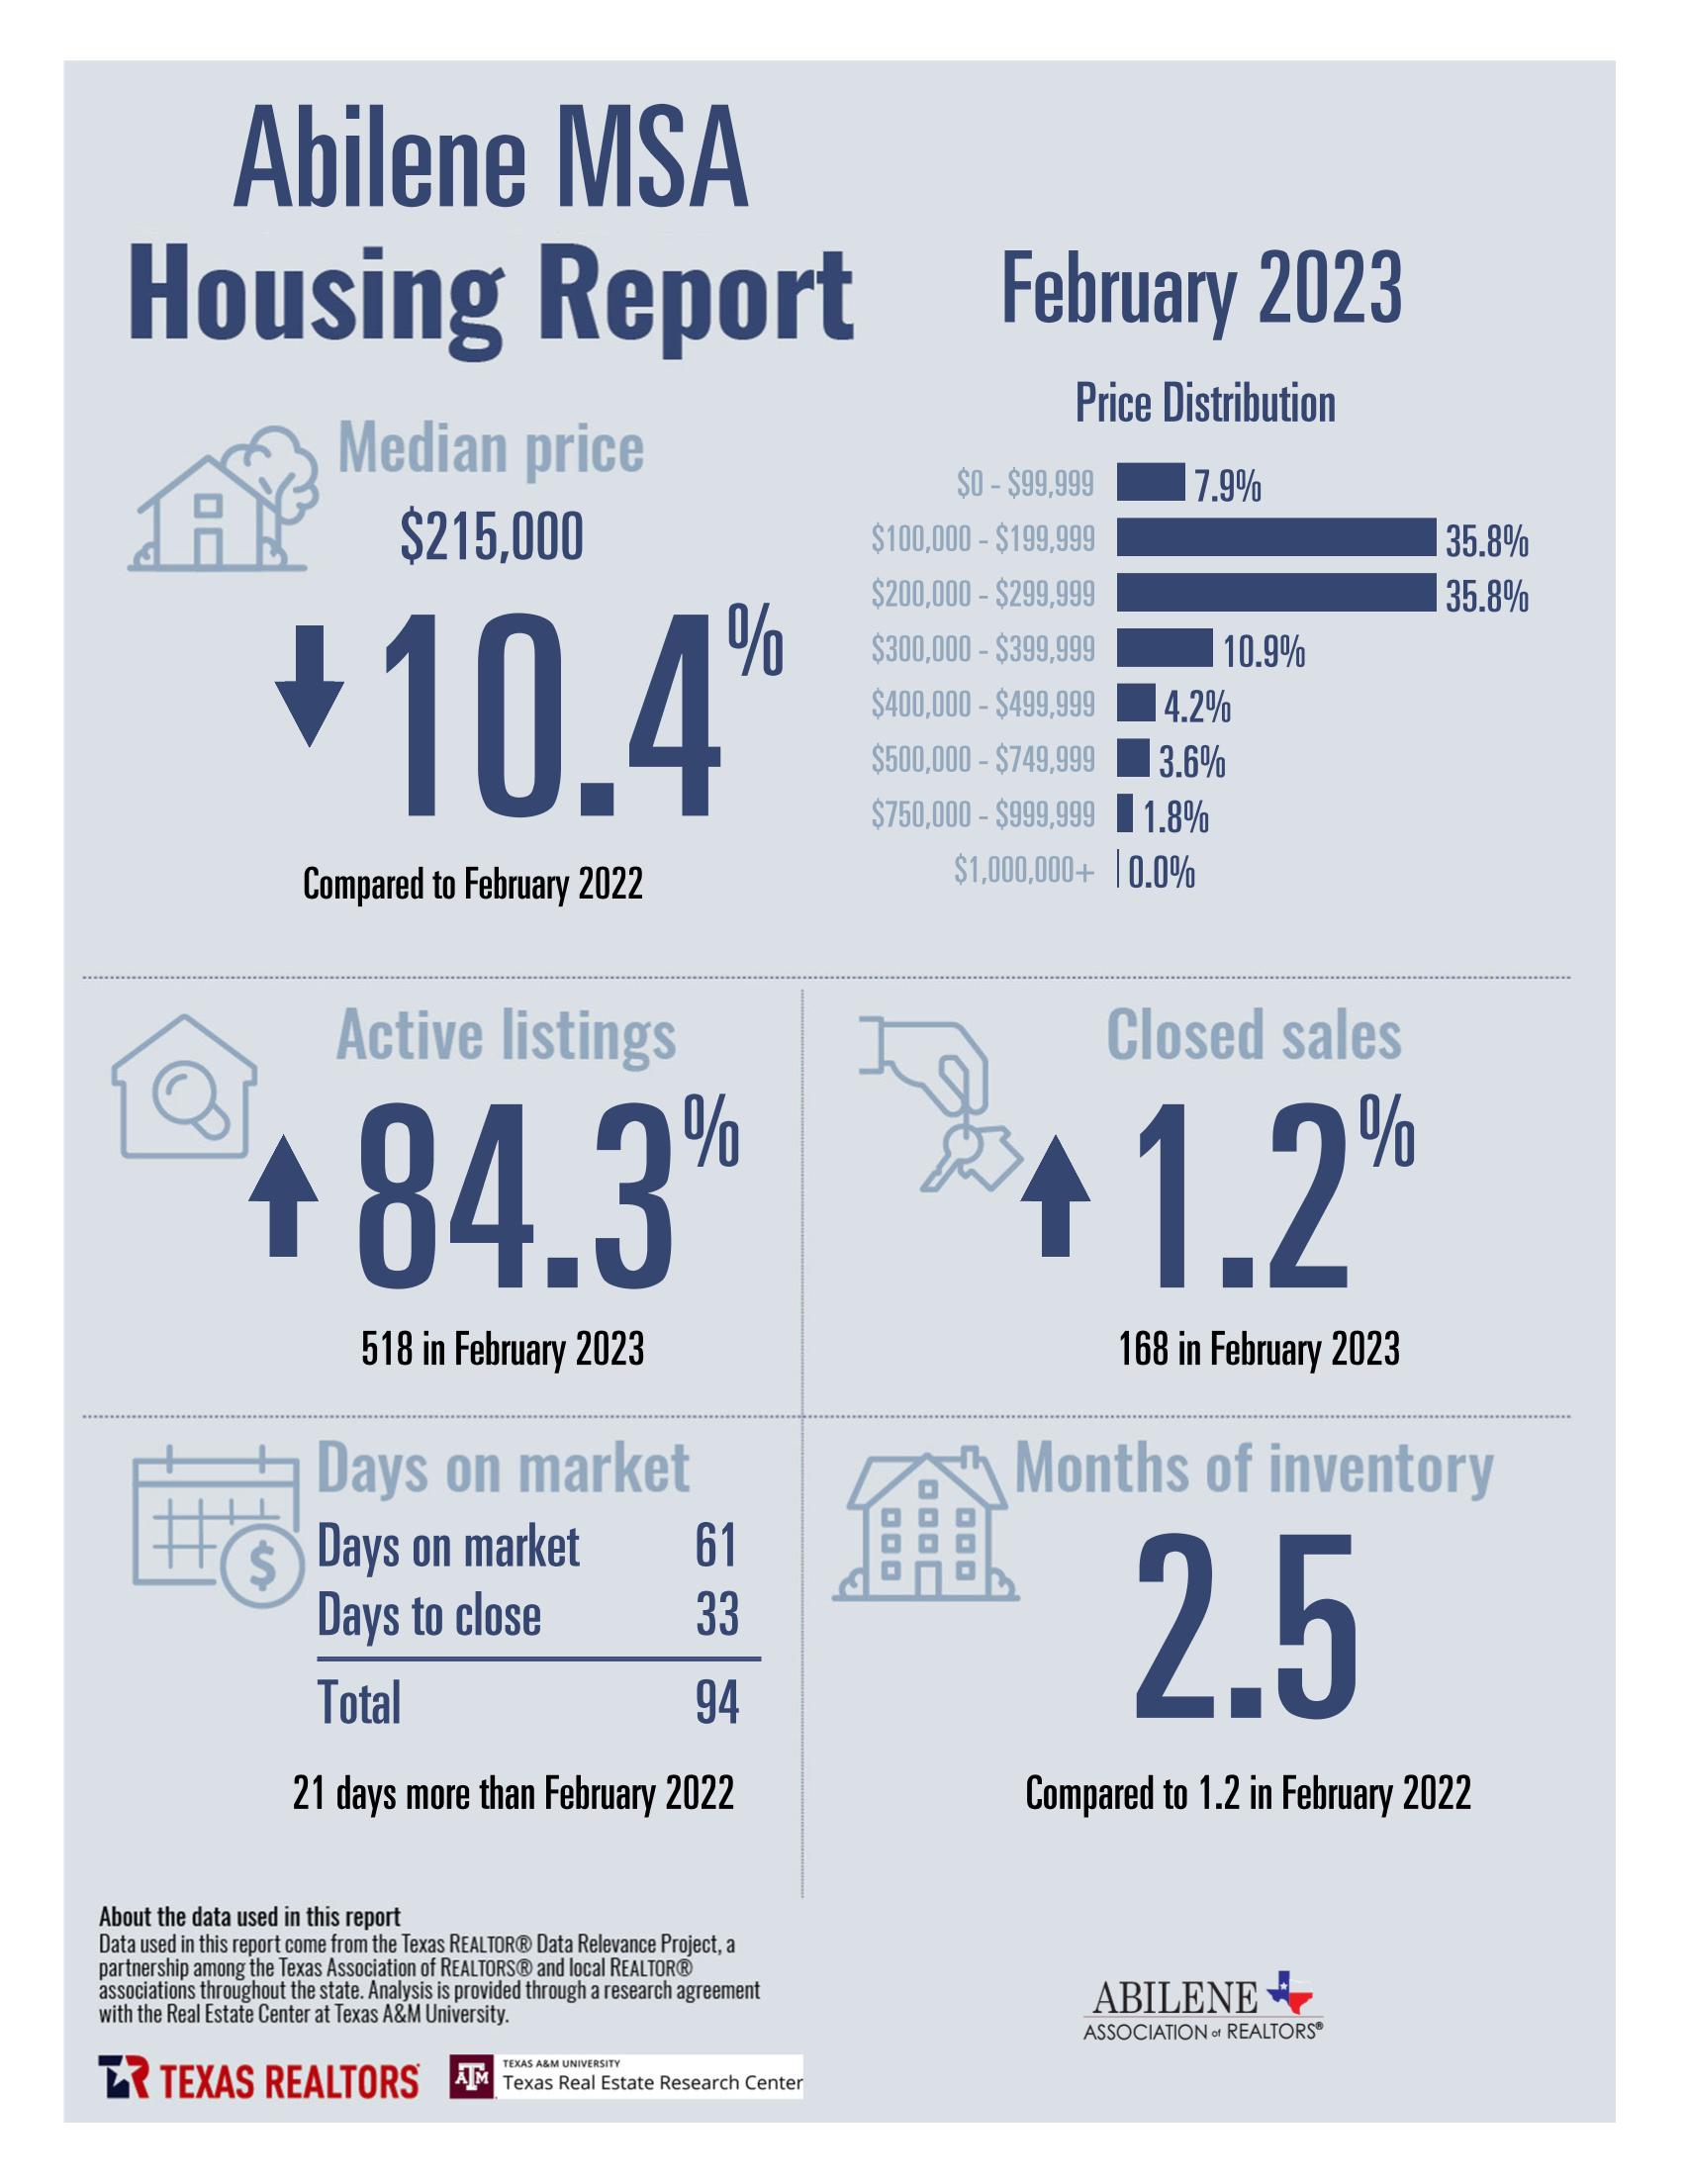 February 2023 Housing Statistics for Abilene, TX